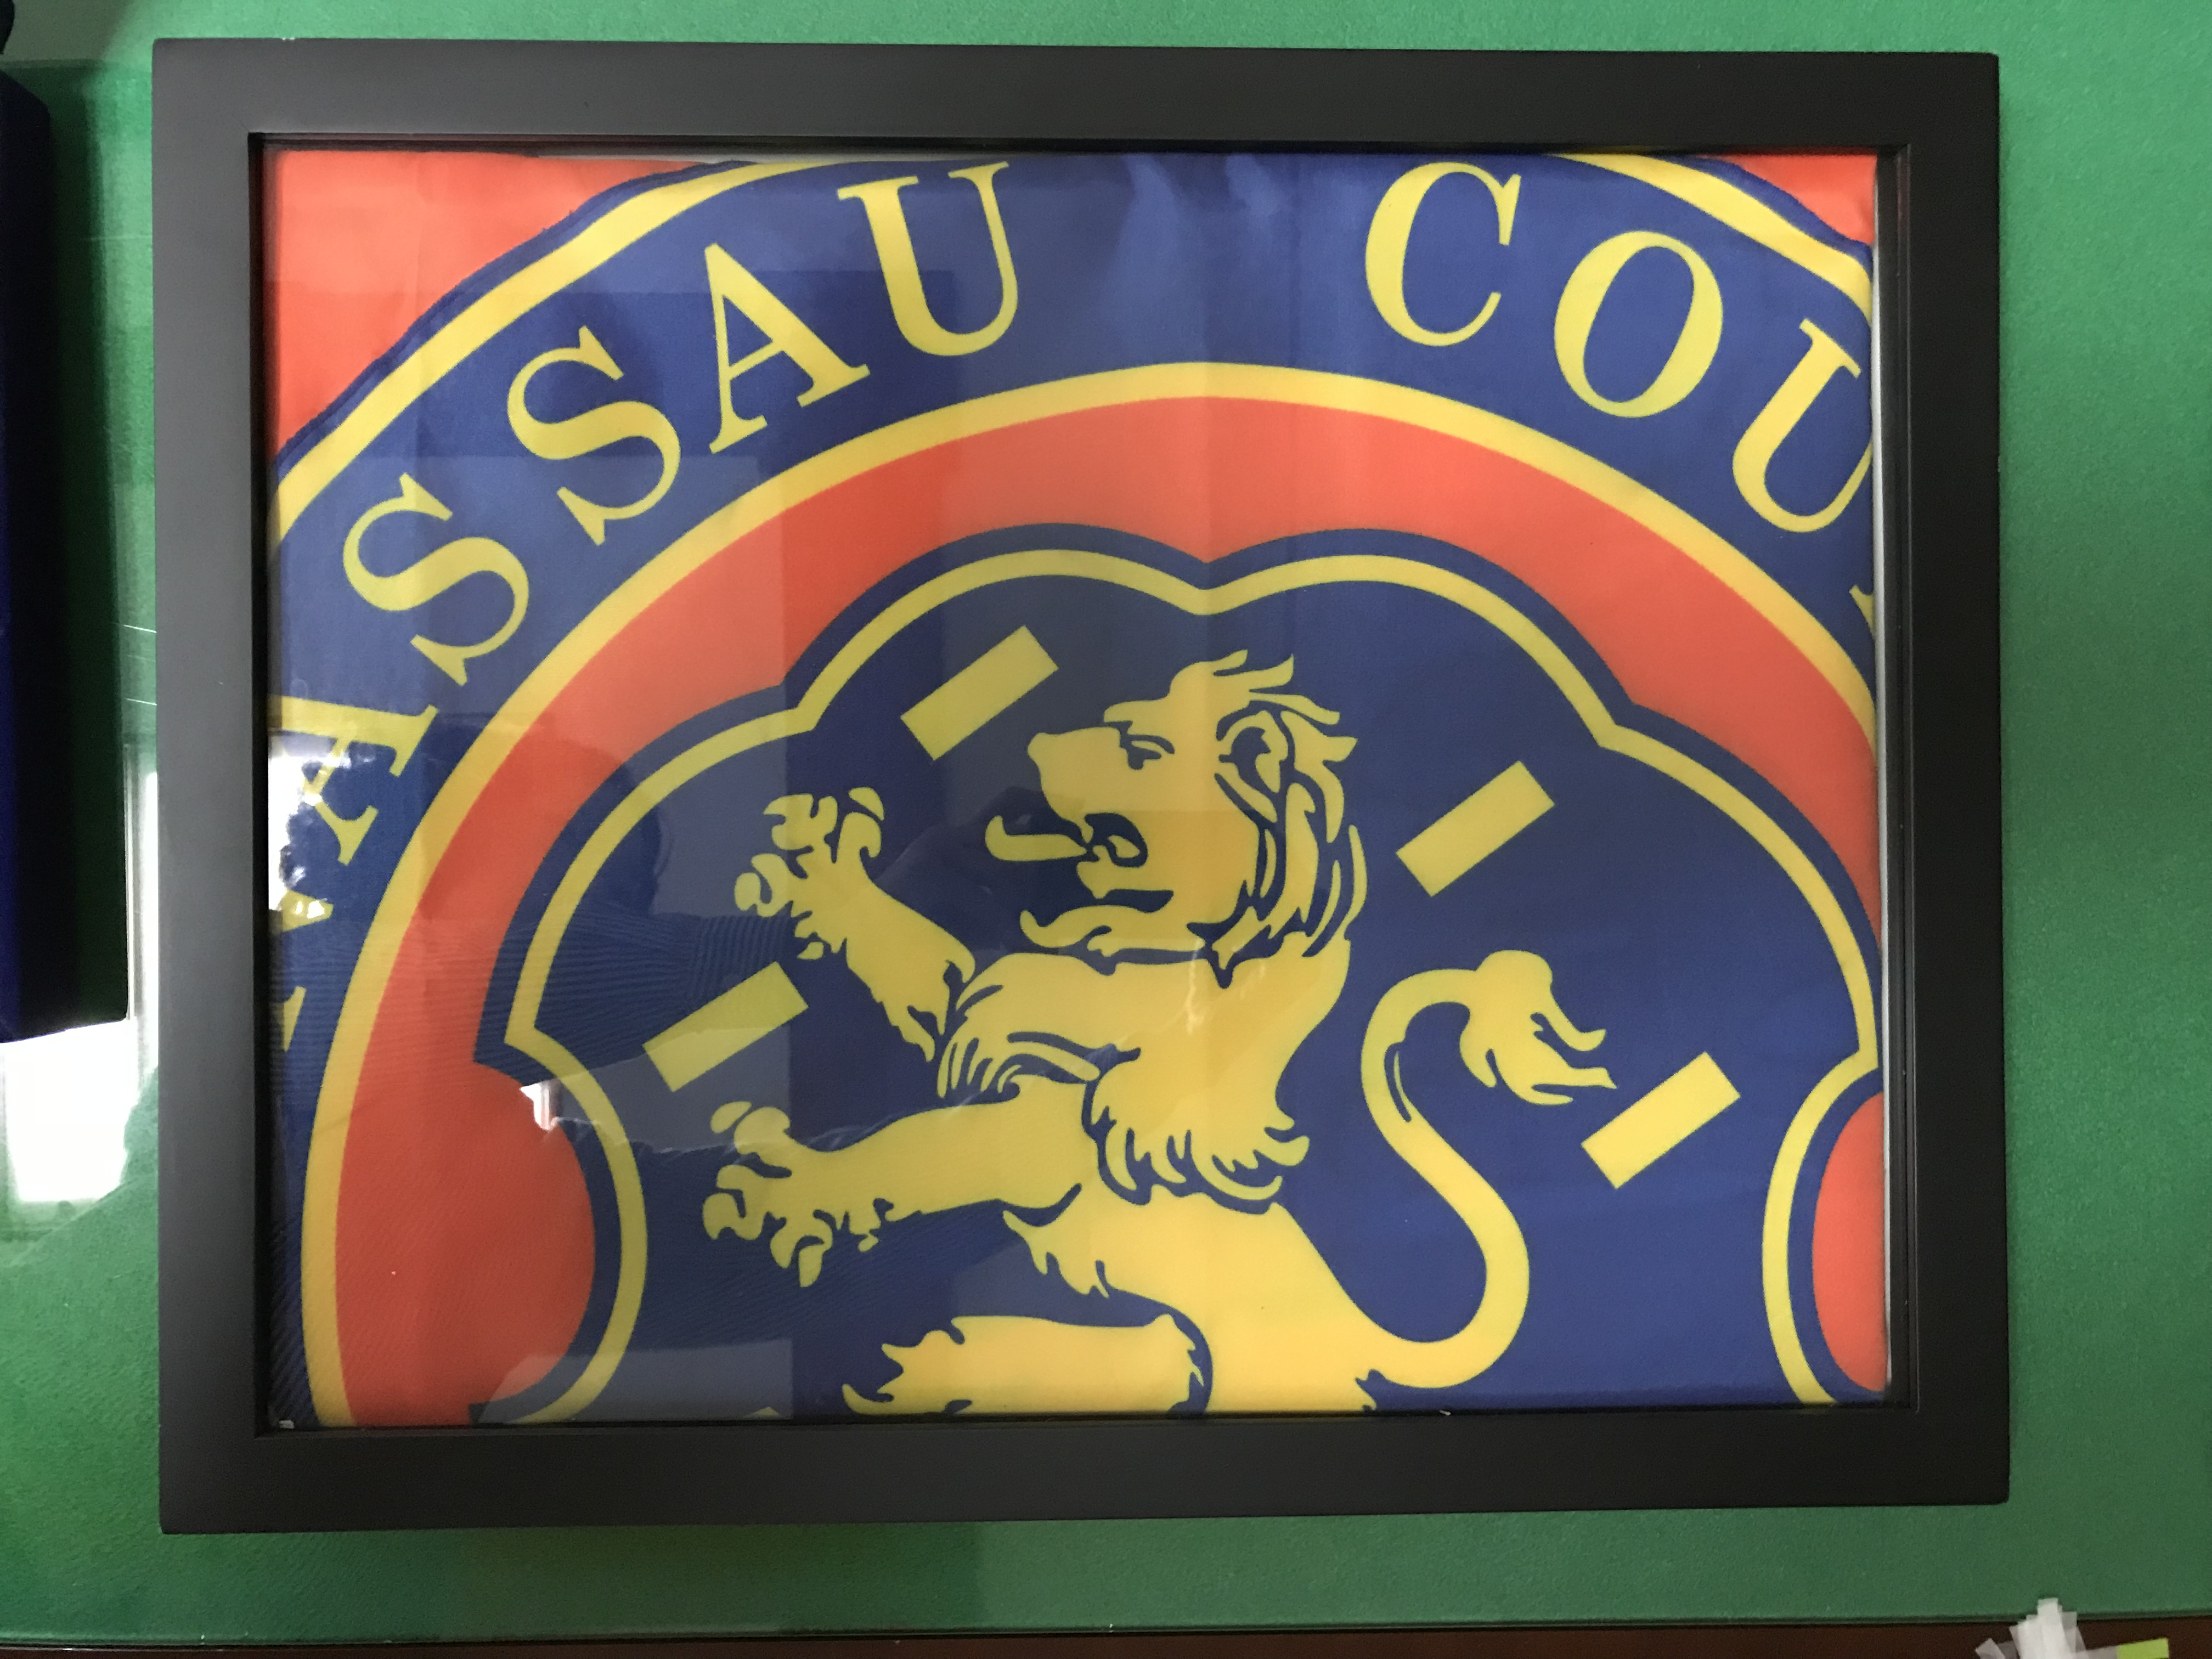 제목 : Nassau County(나소카운티)-깃발
 생산년도 : 2015-11-20
 구분 : 공공기록물
 소장처 : 완도군
 정보 : 나소카운티로부터 공포패(Citation) - 깃발(상자 패키징)